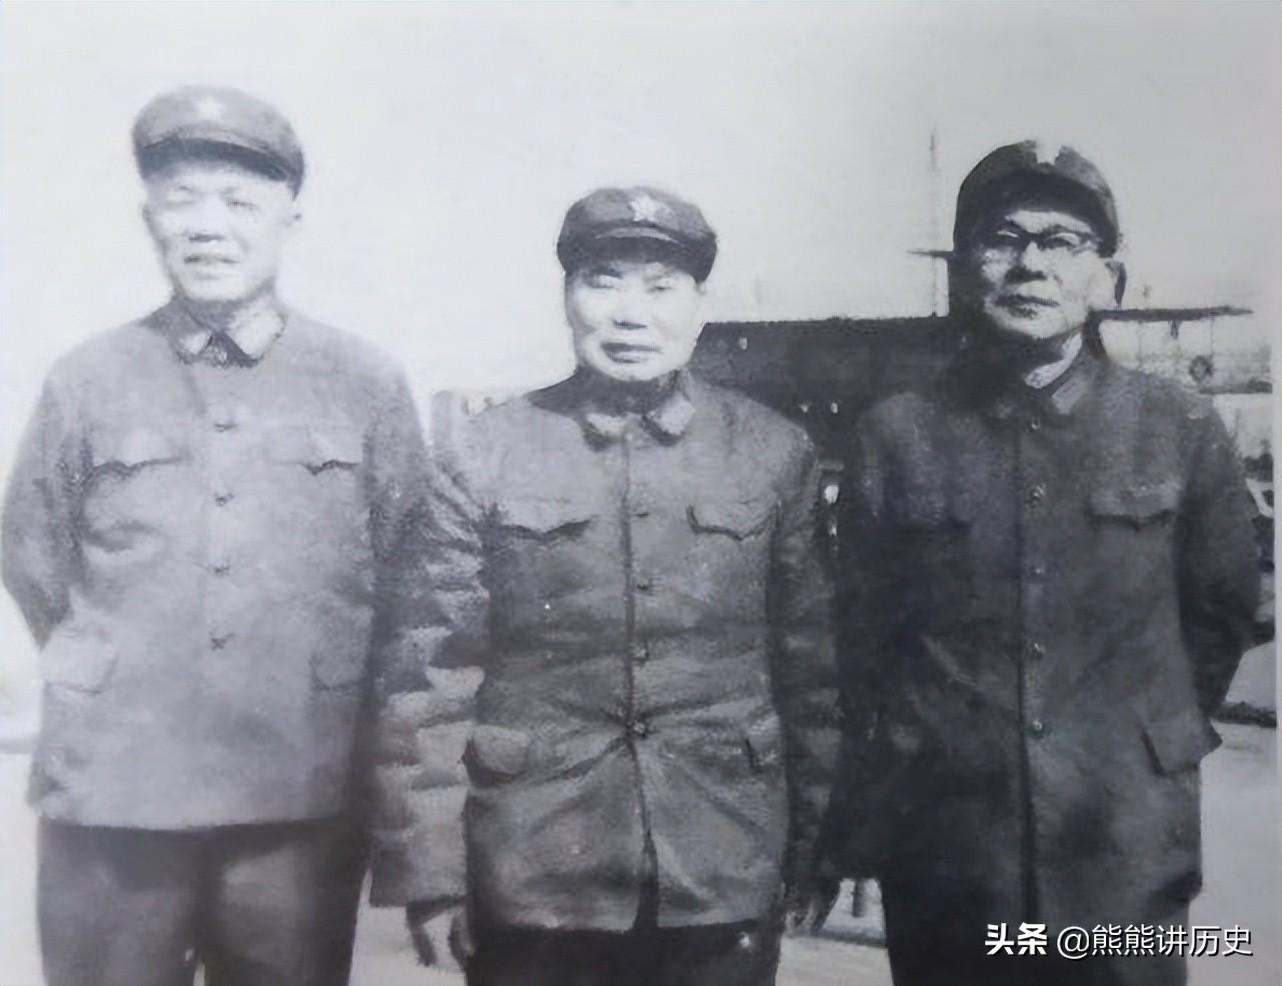 三位上将同框合影，站在C位的是总参谋长，旁边两位将军也是虎将